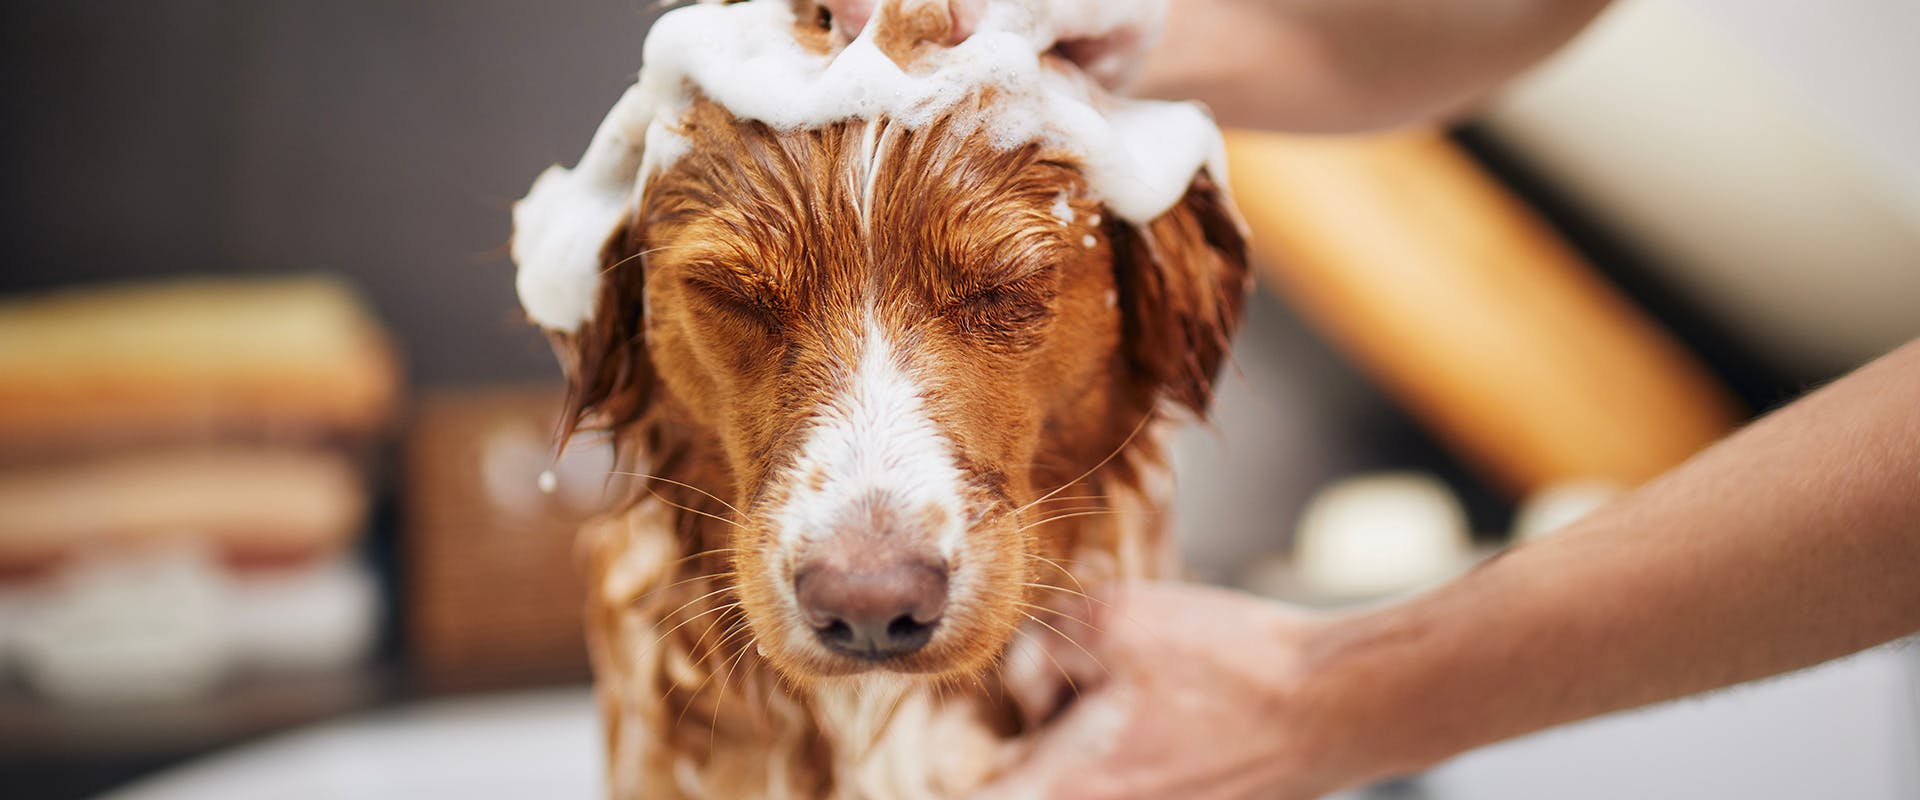 A person shampooing a dog's head in the bath tub